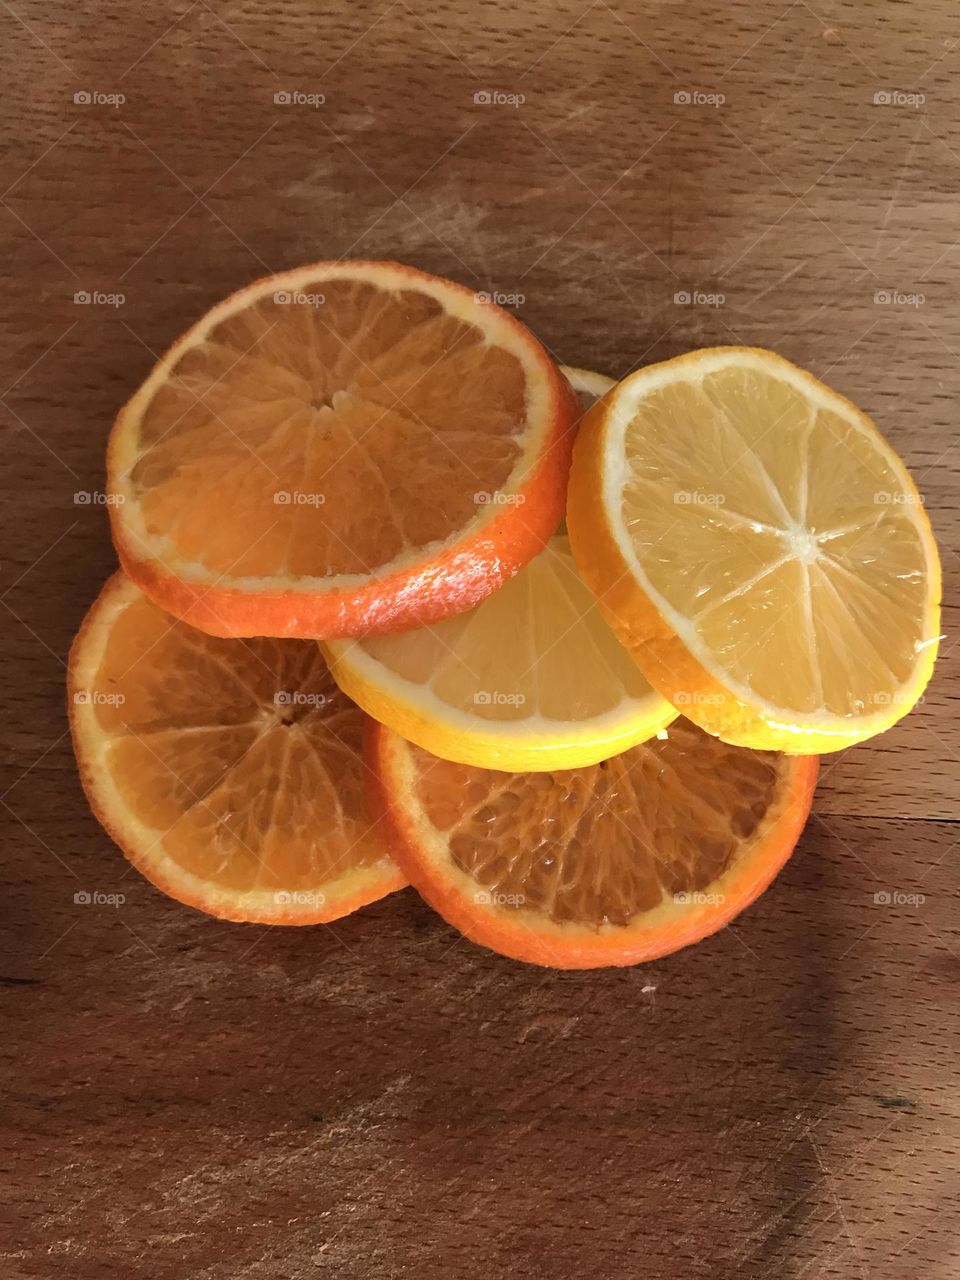 Oranges and lemons go together.